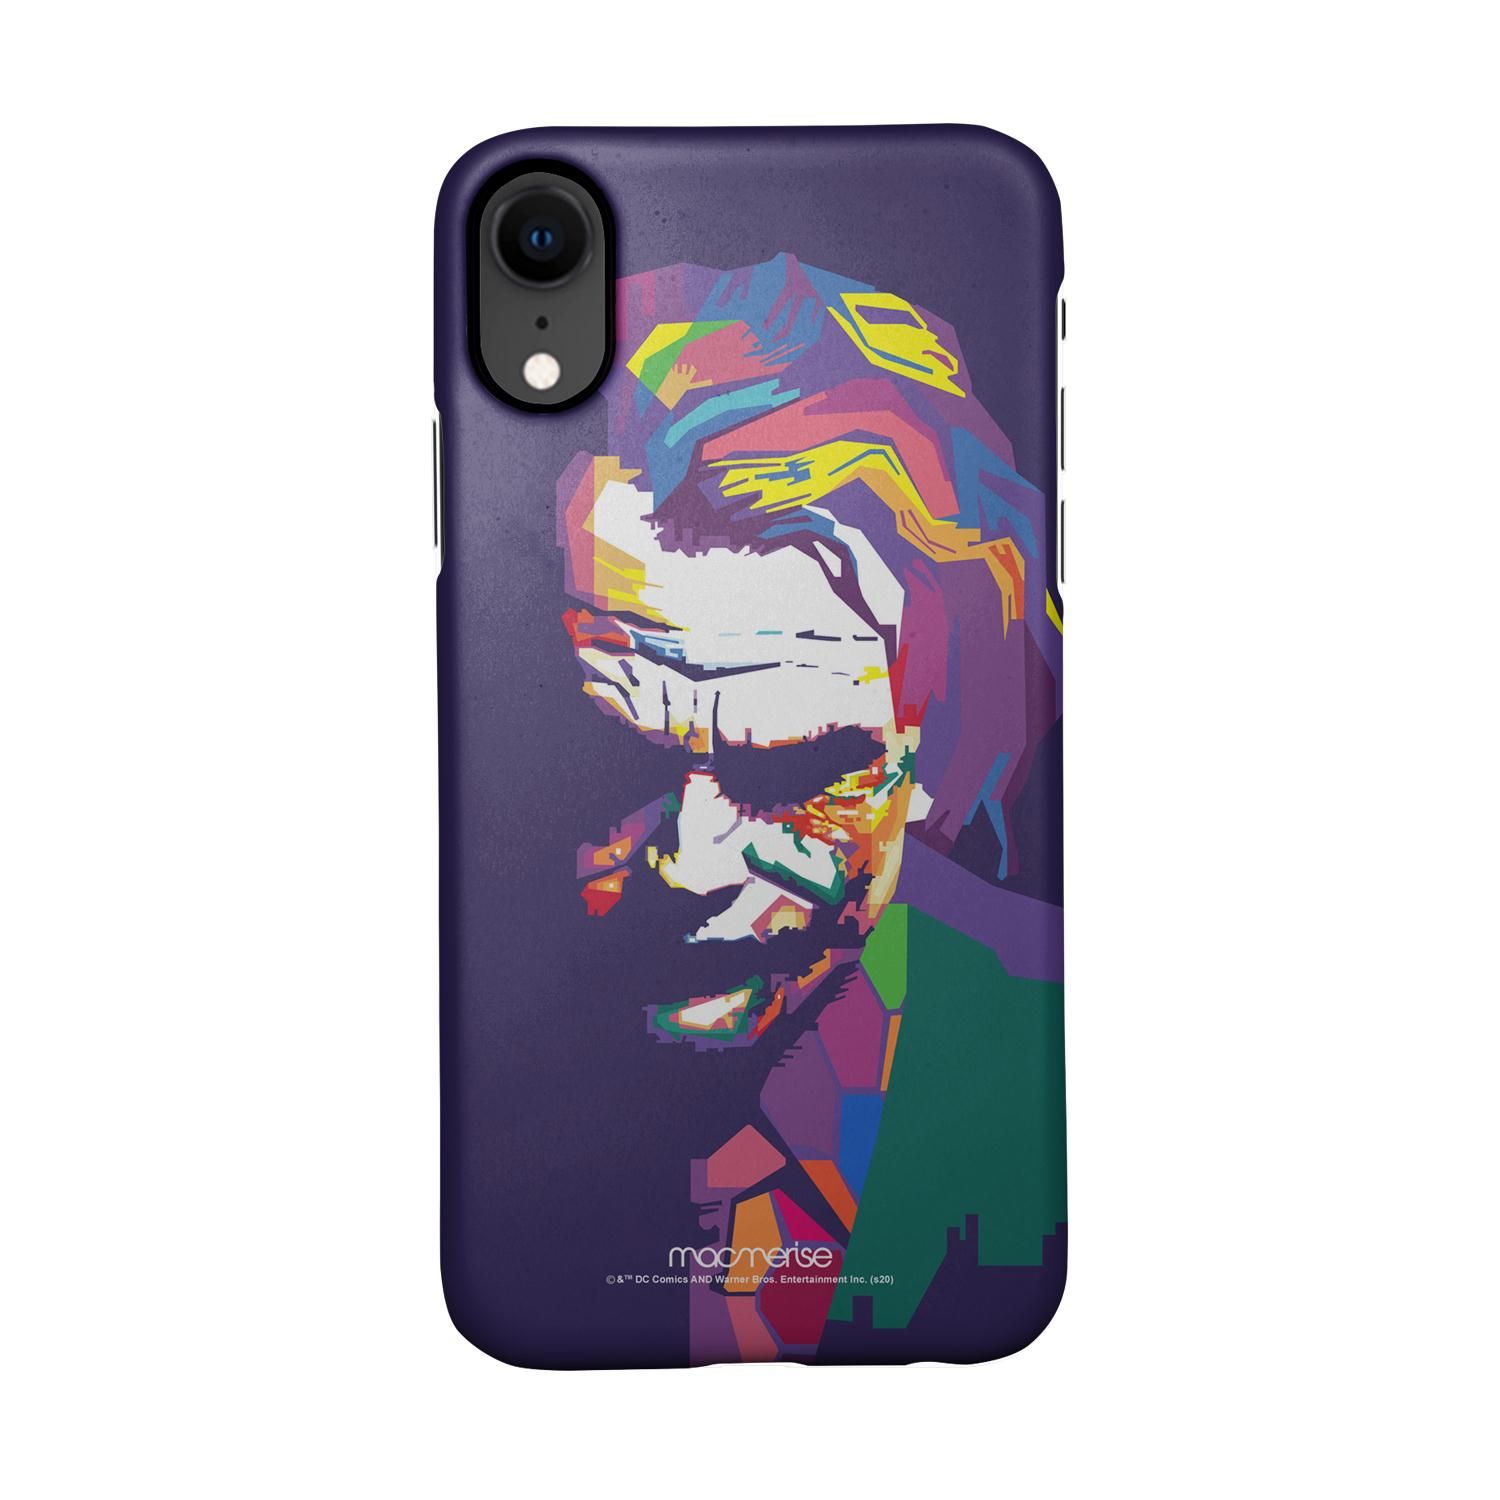 Buy Joker Art - Sleek Phone Case for iPhone XR Online